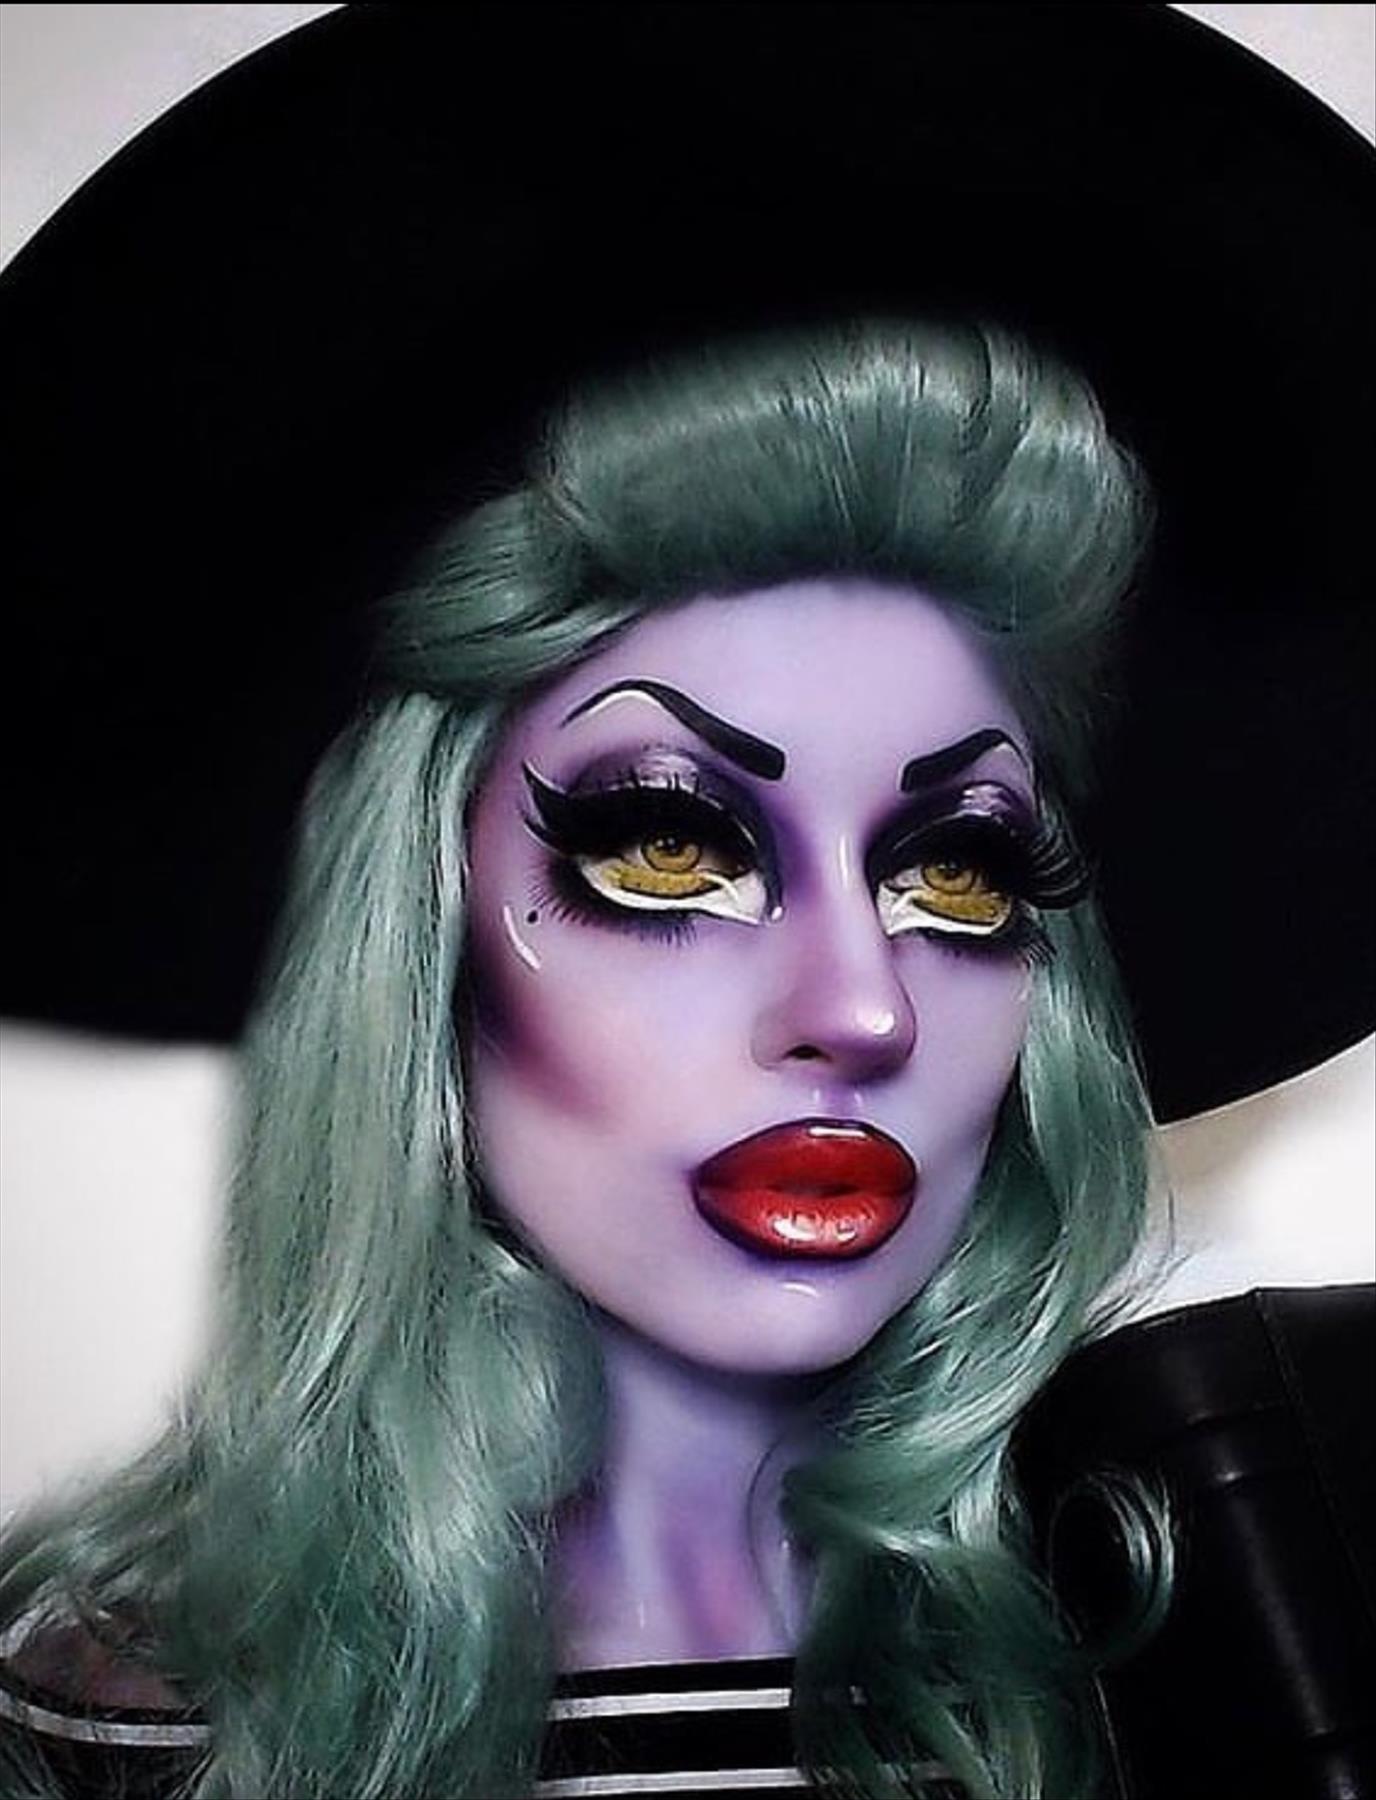 Halloween makeup ideas to wear in 2022